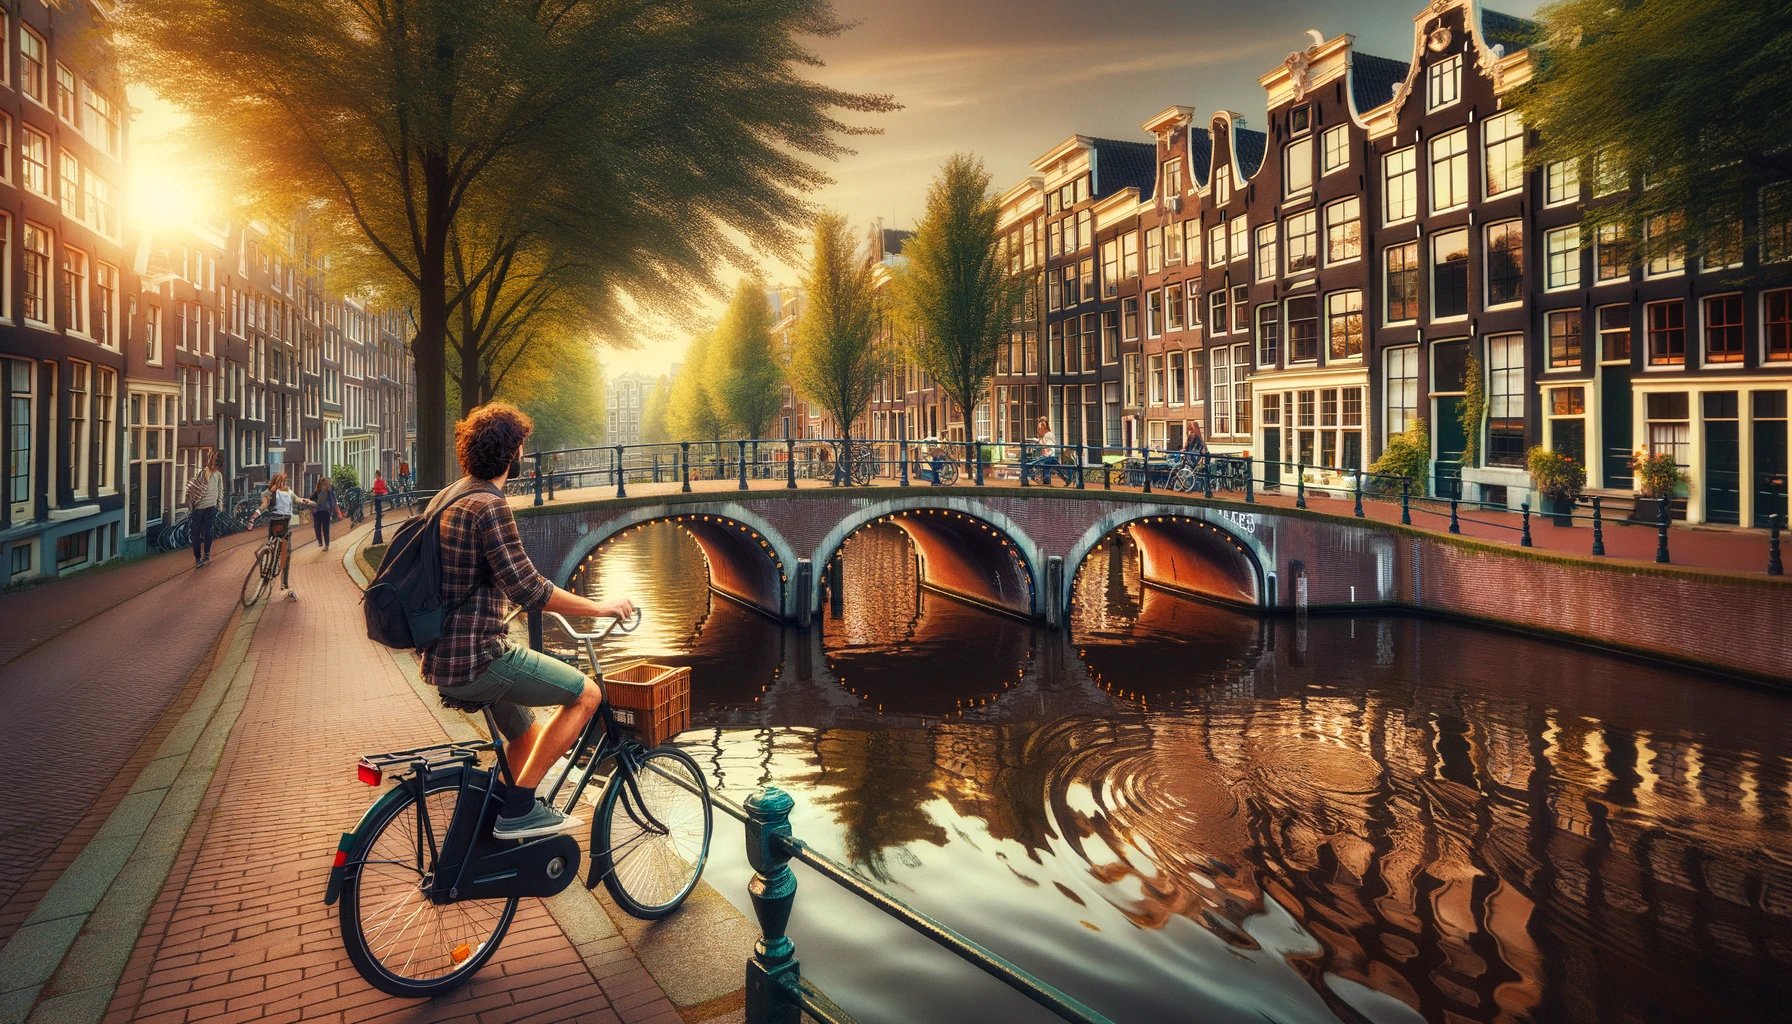 explorando la vida cotidiana en bicicleta por los canales de Ámsterdam